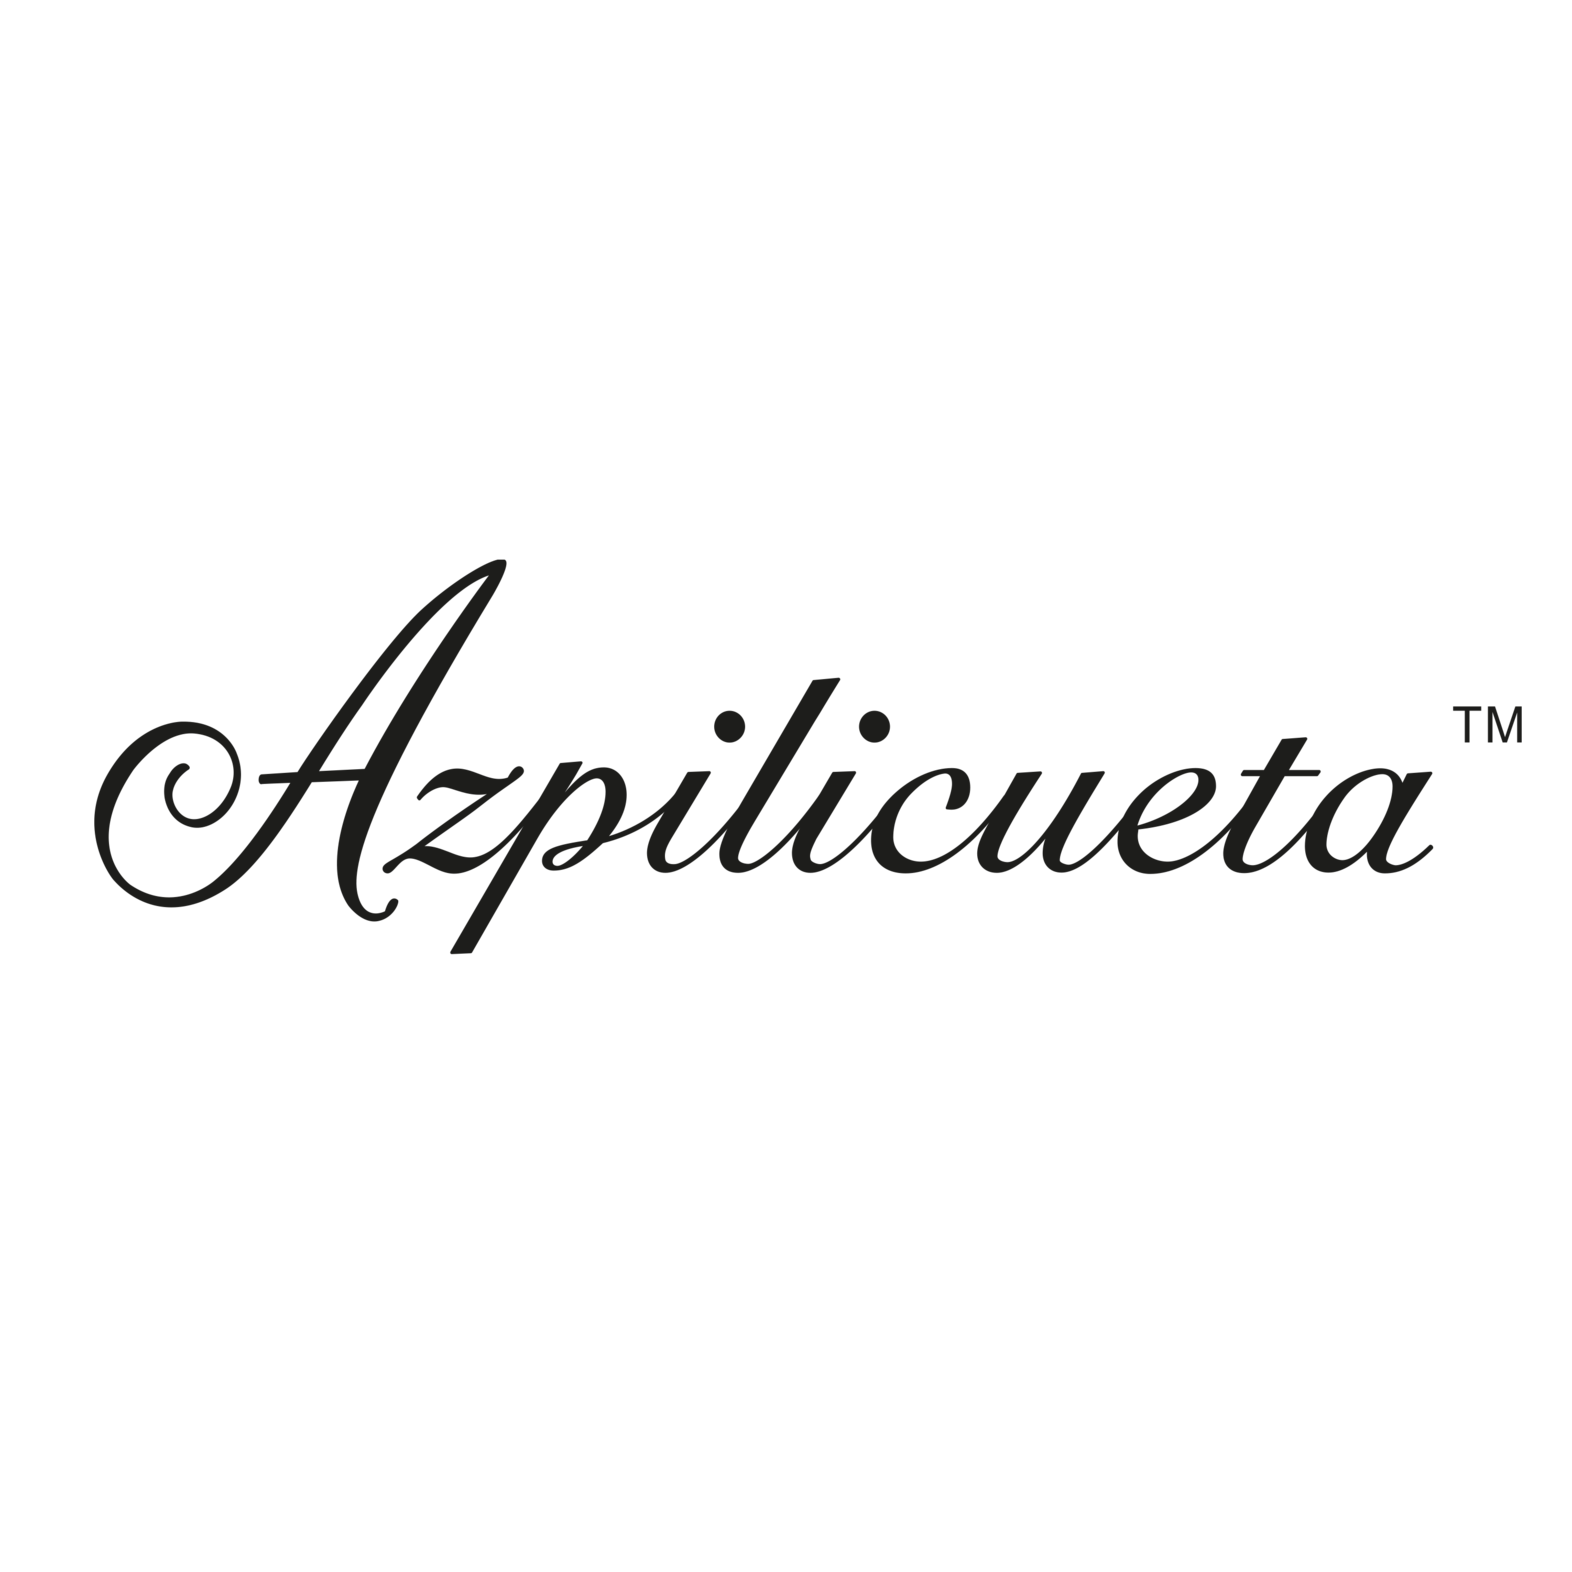 Azpilicueta